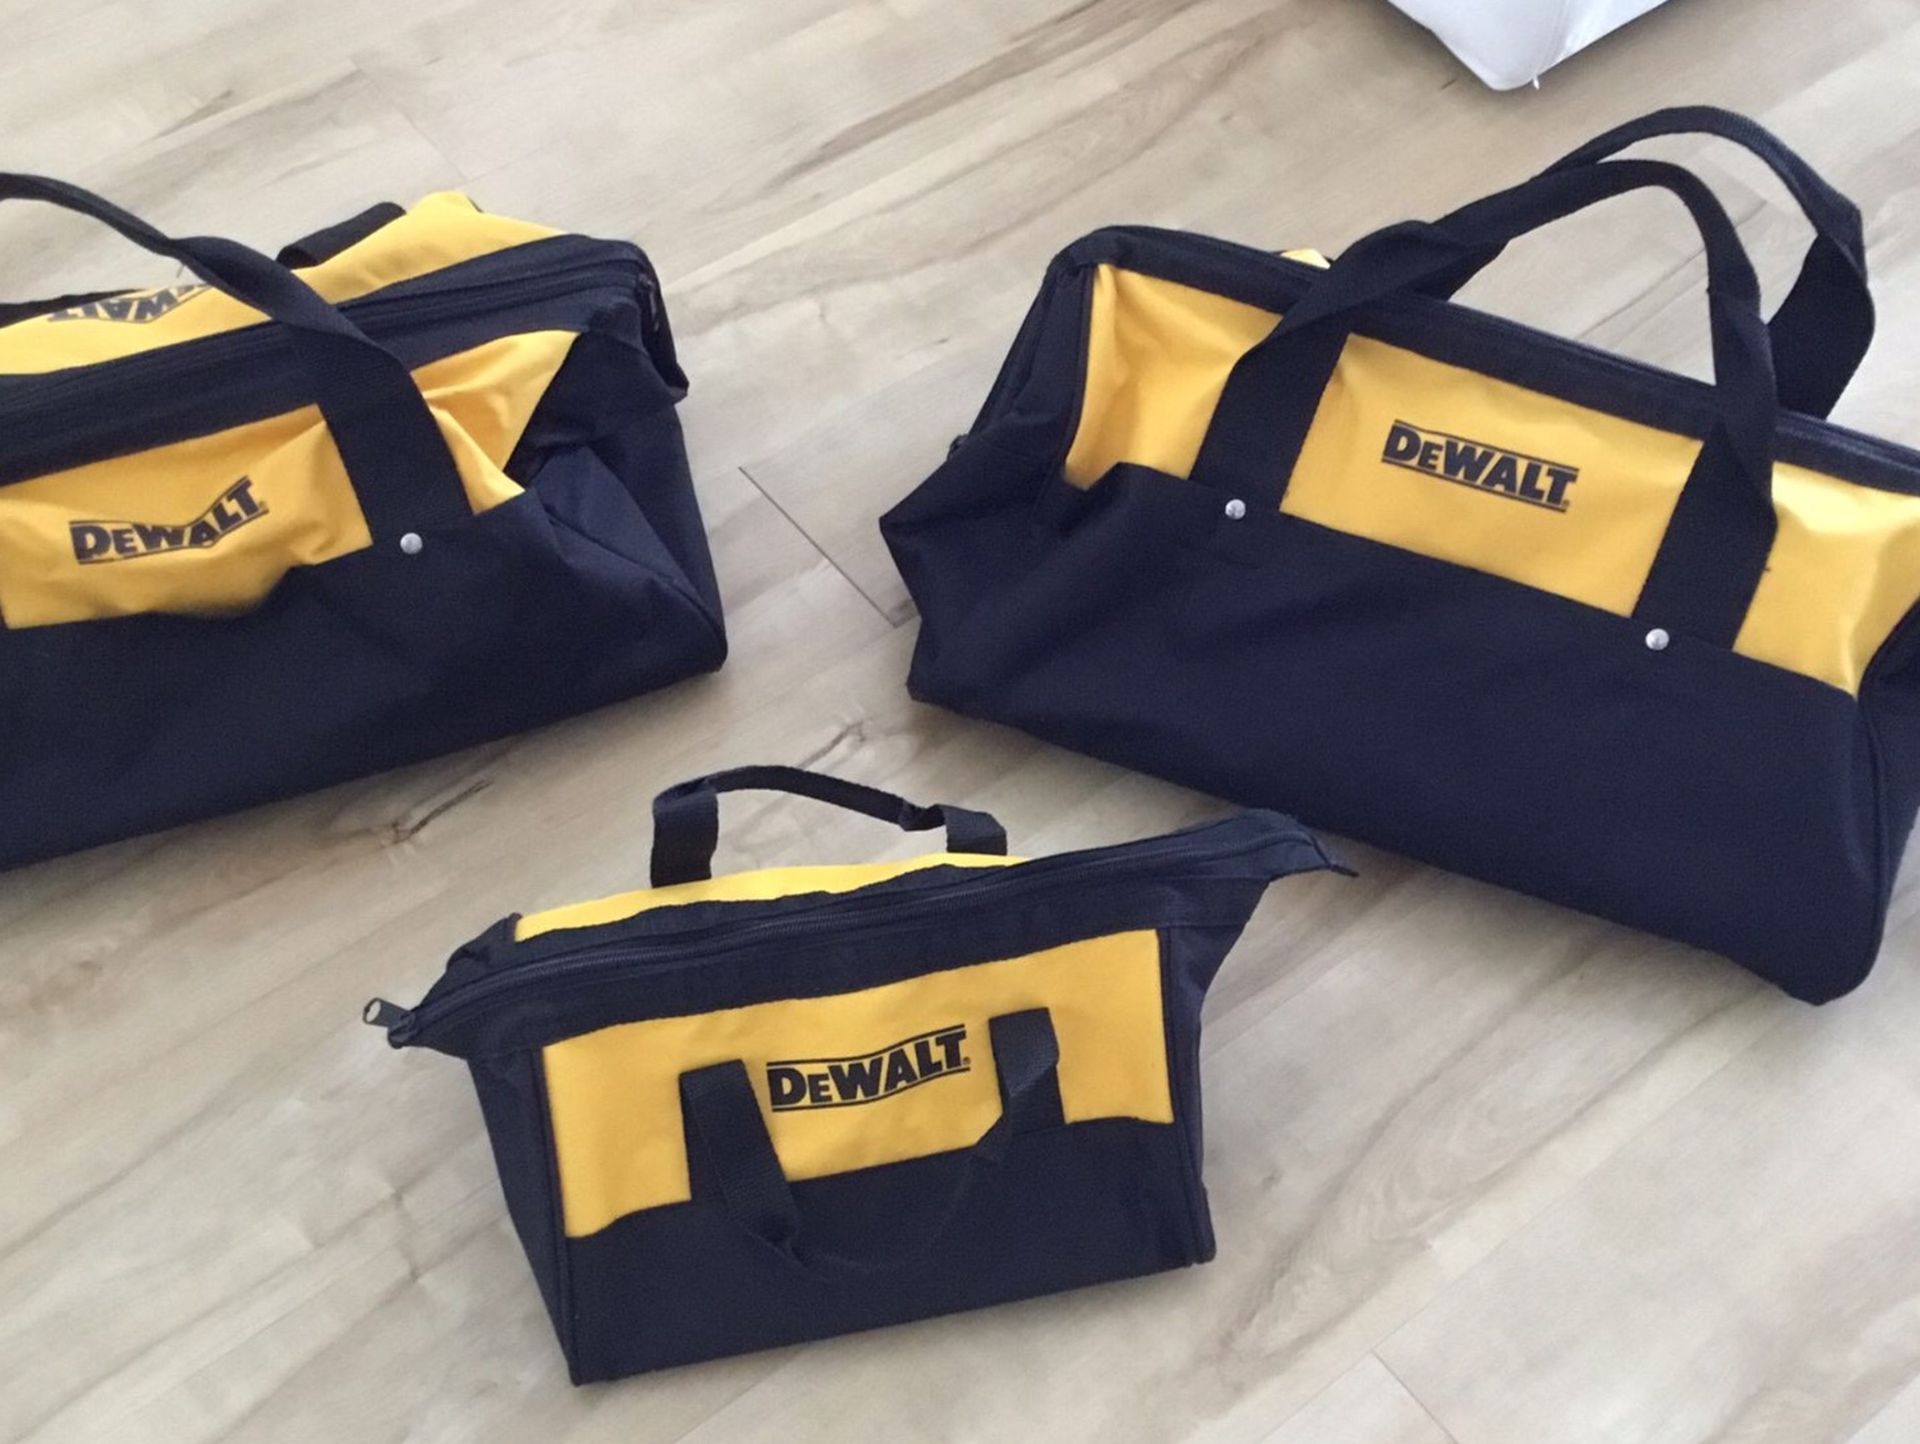 Dewalt bags set for tools new!!